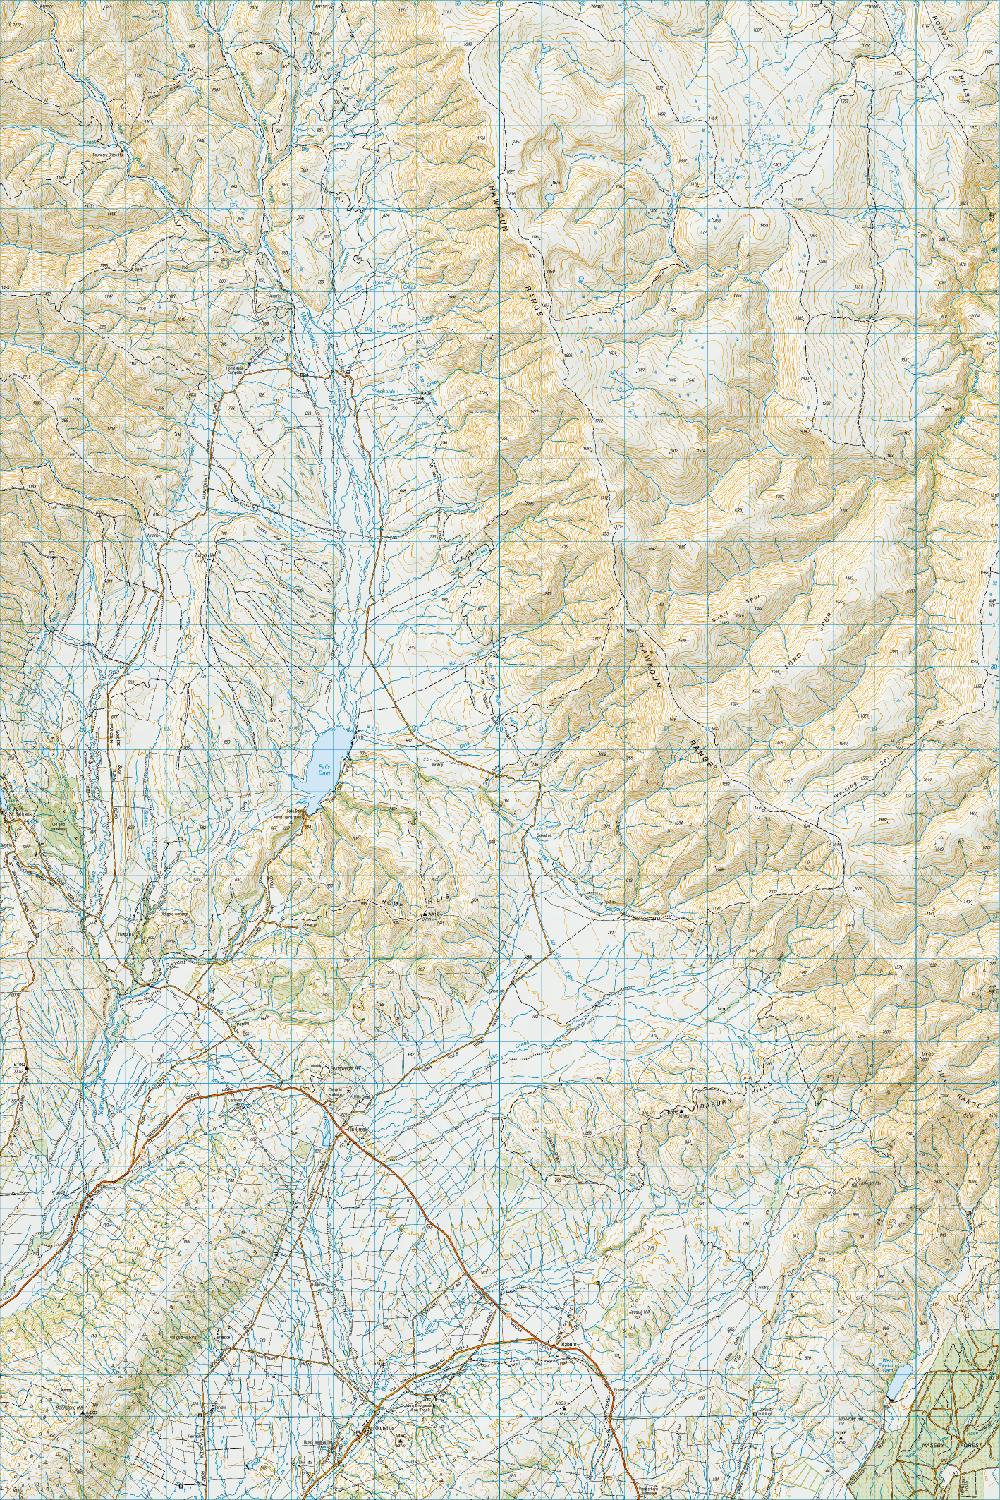 Topo map of Idaburn